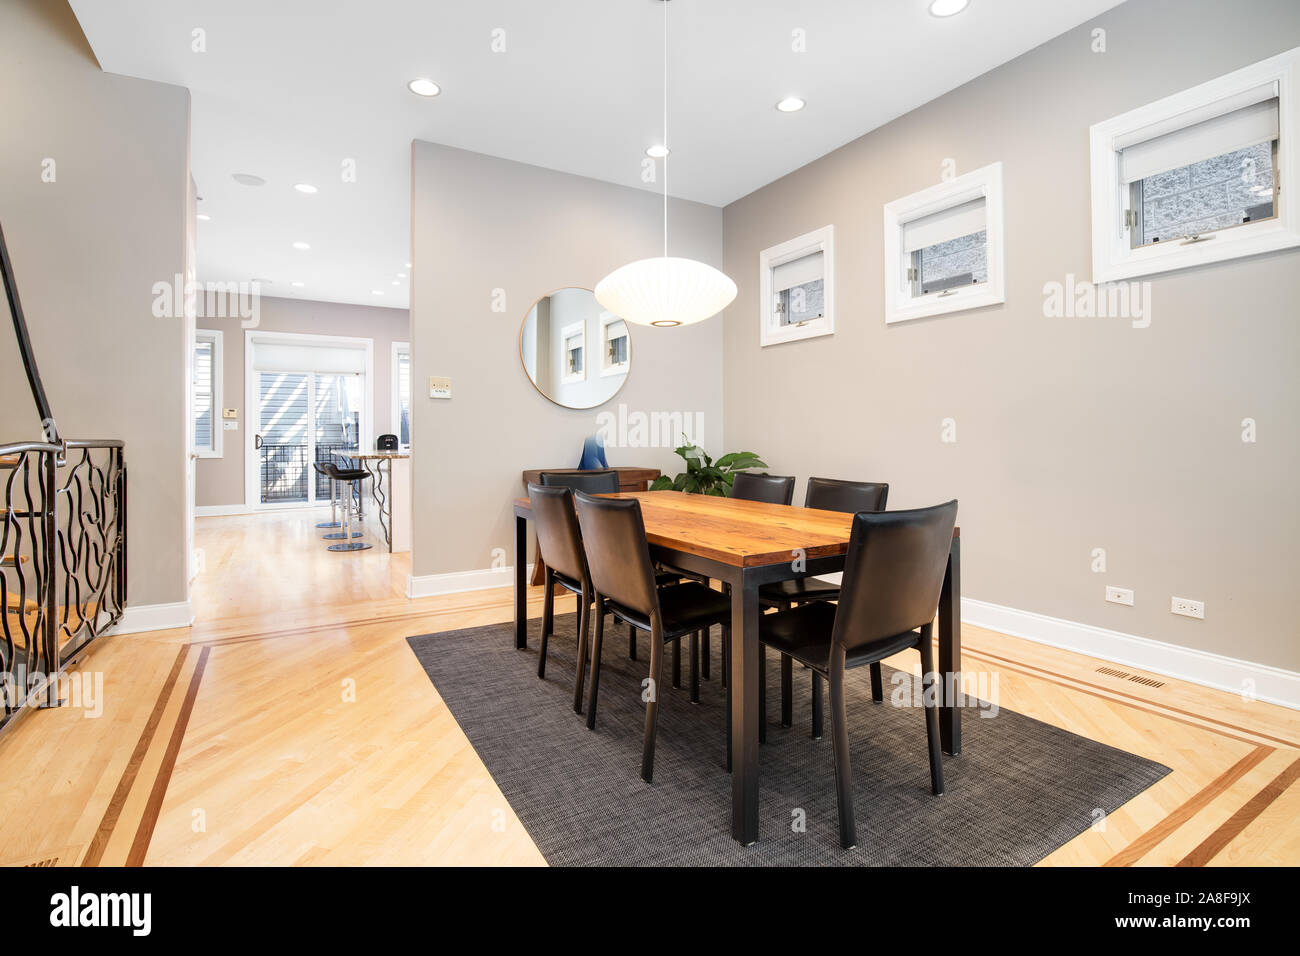 Ein luxuriöser Speisesaal, der mit dem Wohnzimmer verbunden ist. Dieses geräumige Bereich kann ein großer Tisch mit einem modernen Licht nach unten hängen über der Oberseite anbringen. Stockfoto